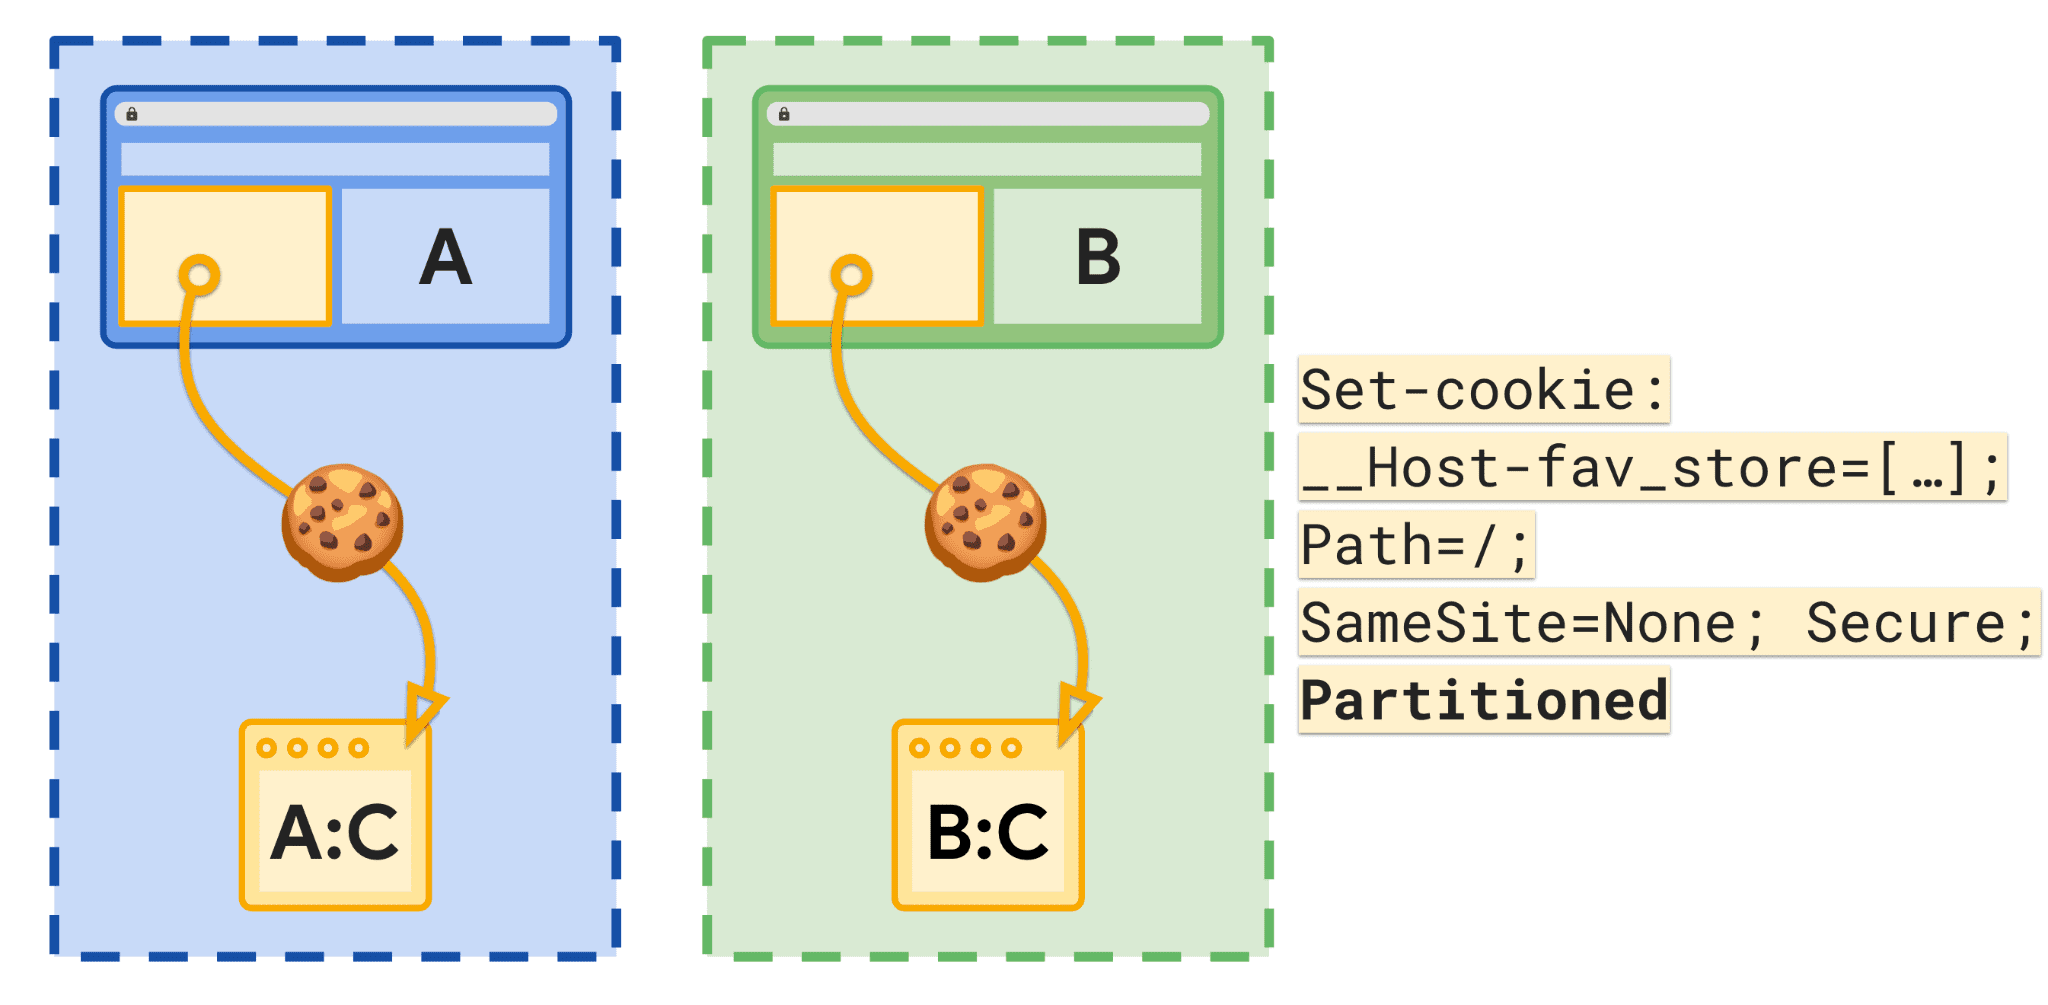 쿠키와 연결된 사이트 및 연결된 저장소를 보여주는 다이어그램